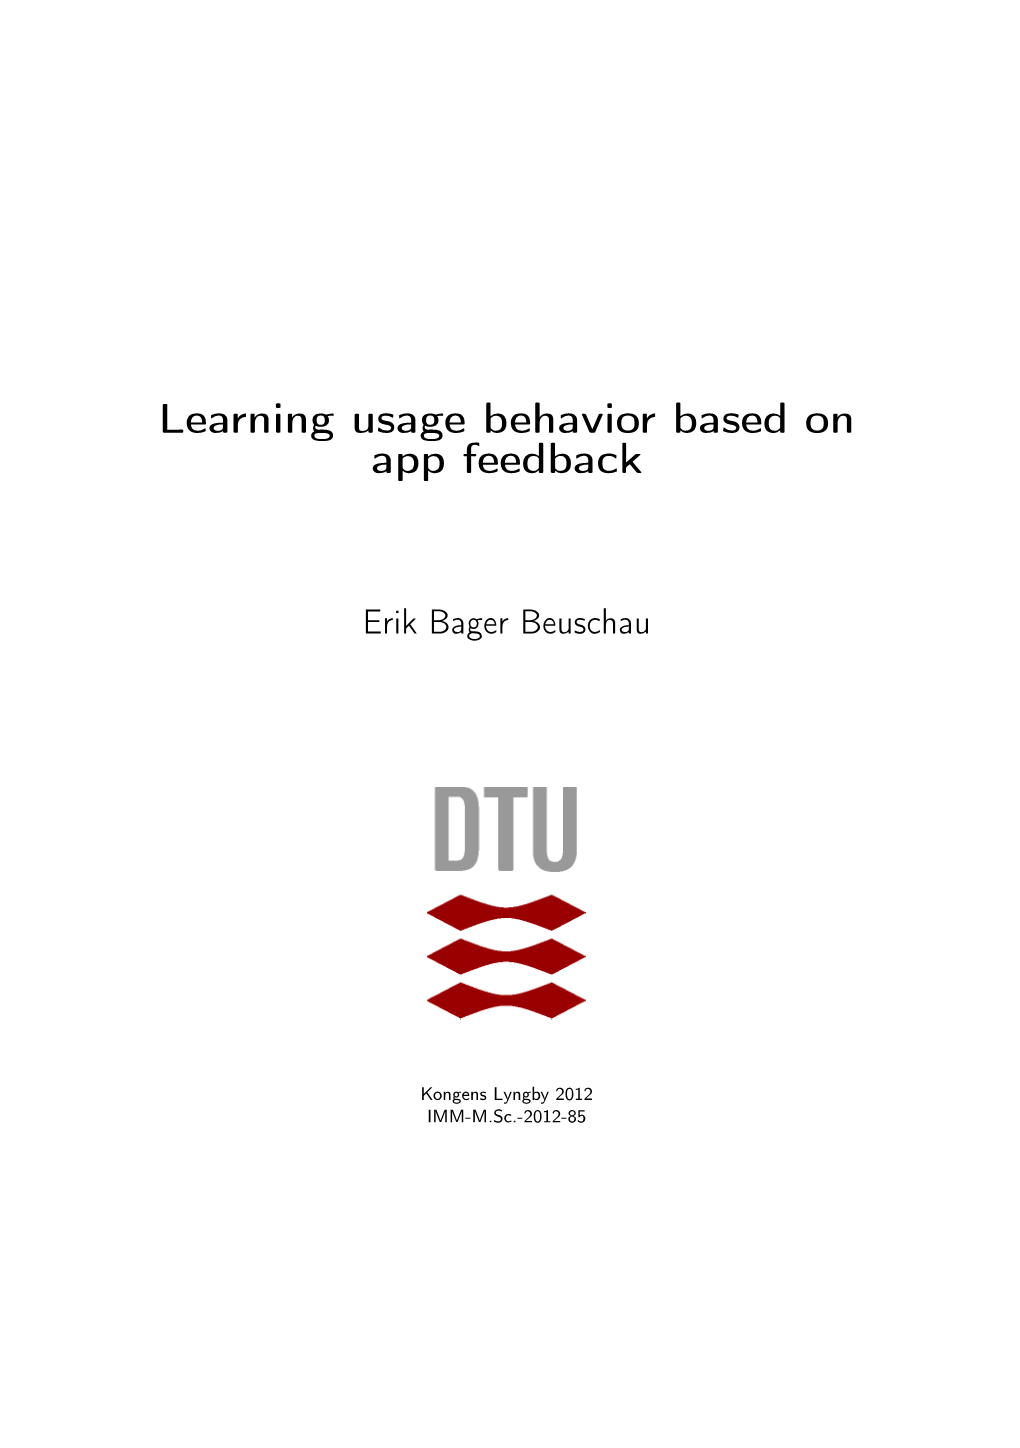 Learning Usage Behavior Based on App Feedback